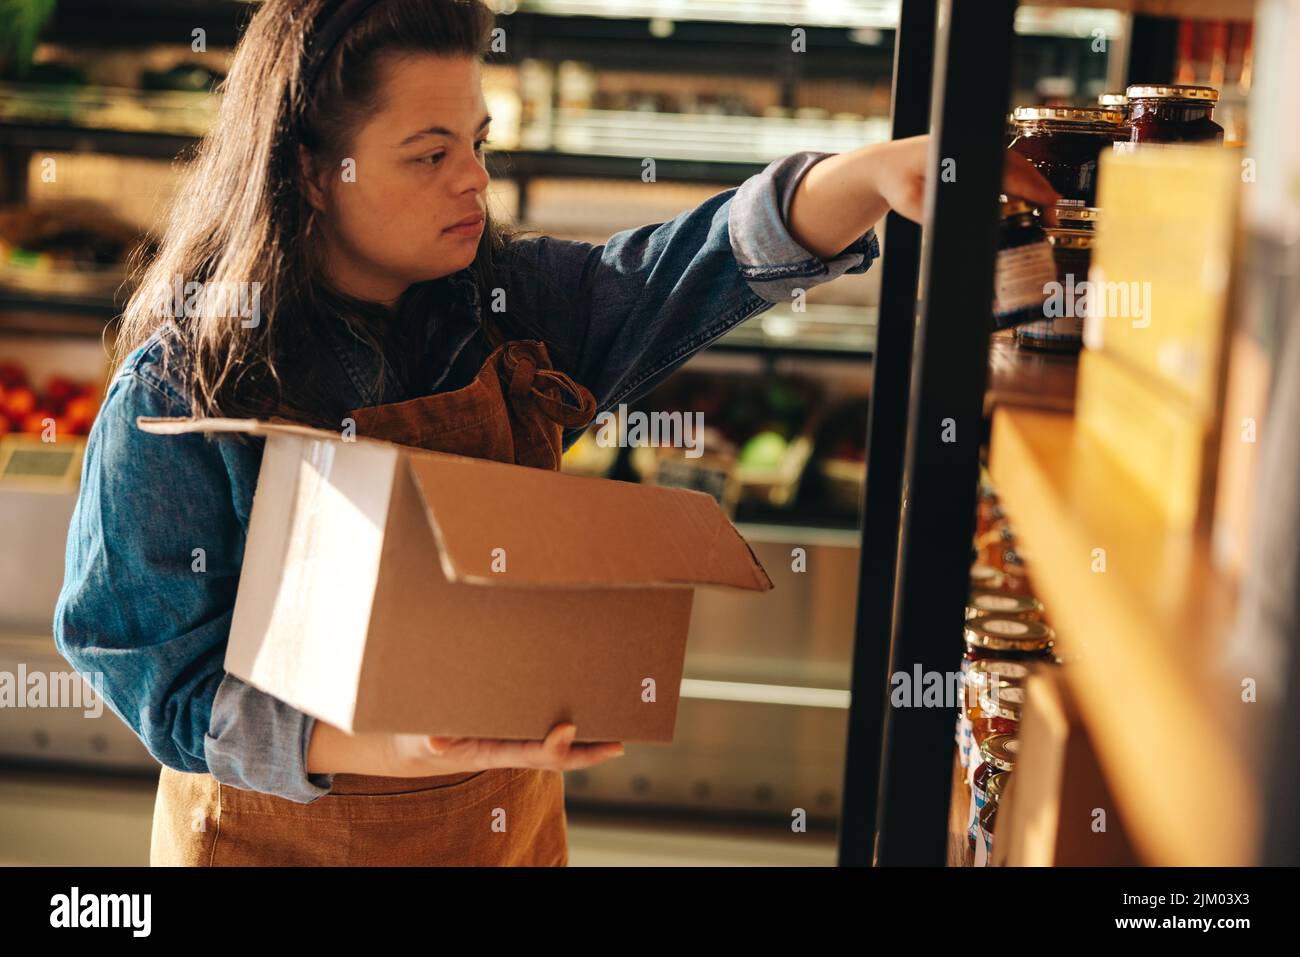 Empleado del supermercado con síndrome de Down reabasteciendo los productos alimenticios en los estantes de la tienda. Mujer empoderada con una discapacidad intelectual que trabaja como a. Foto de stock